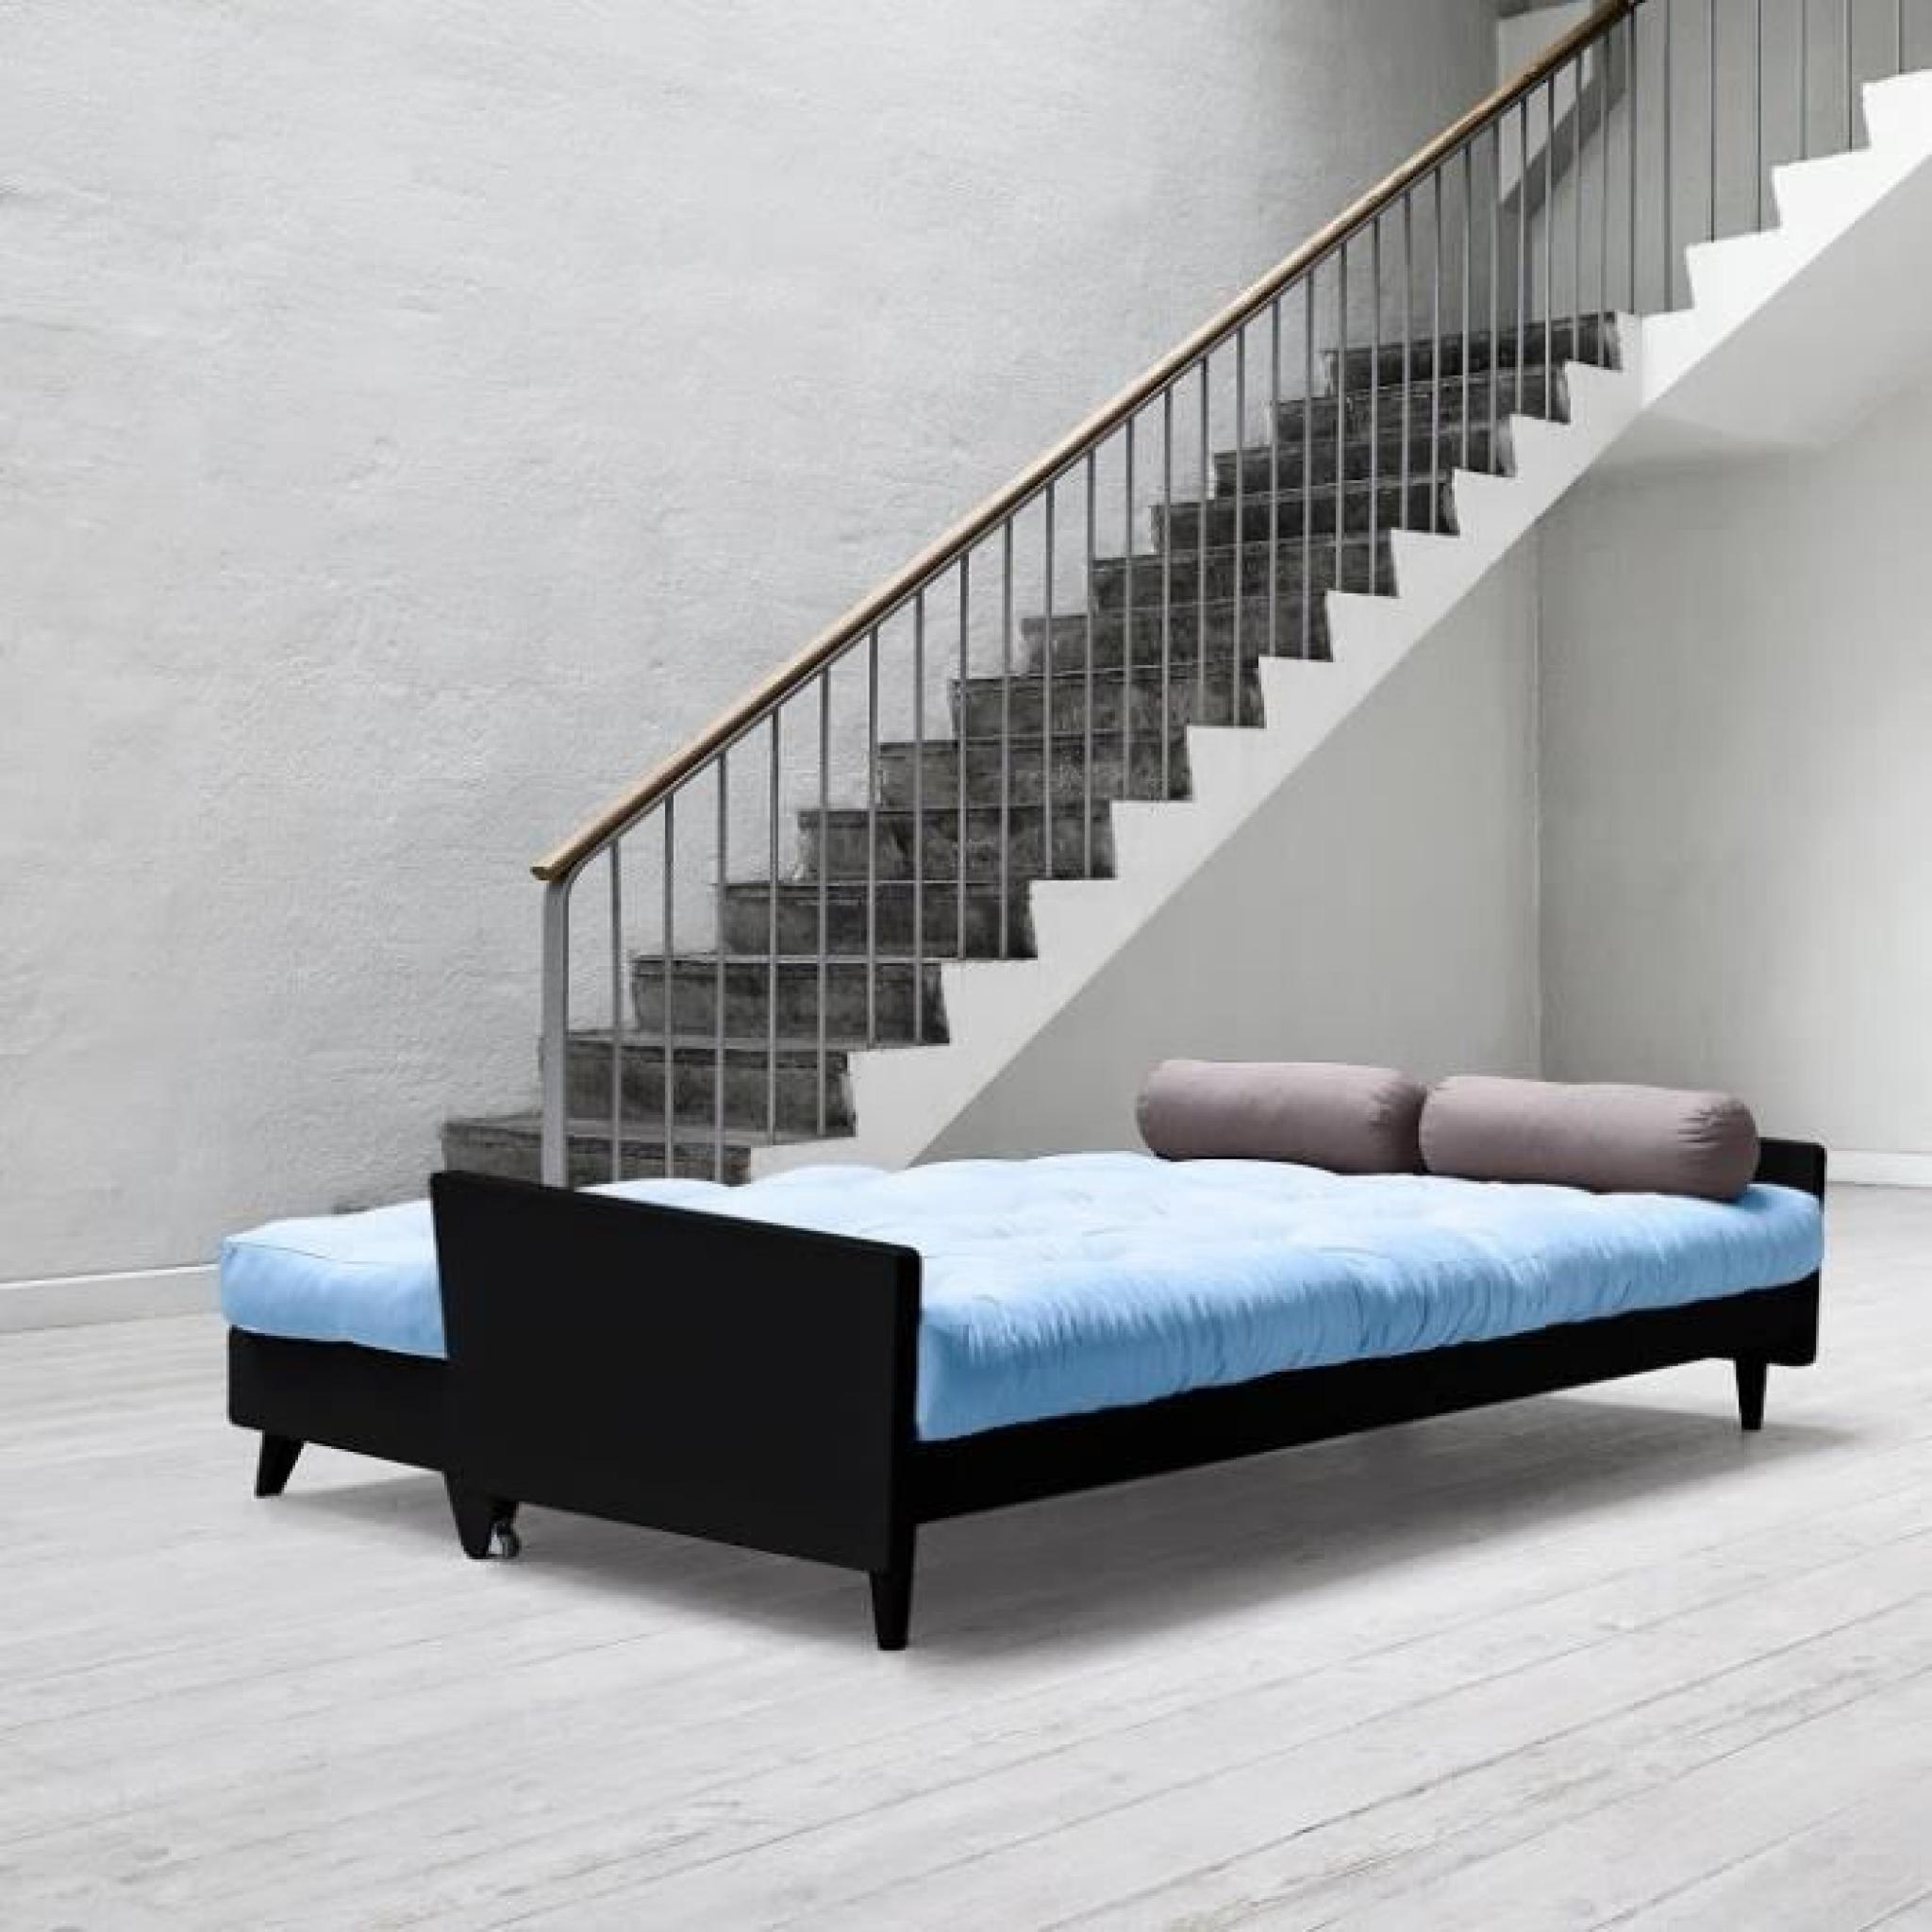 Canapé noir 3/4 places convertible INDIE futon bleu celeste couchage 130*190cm pas cher